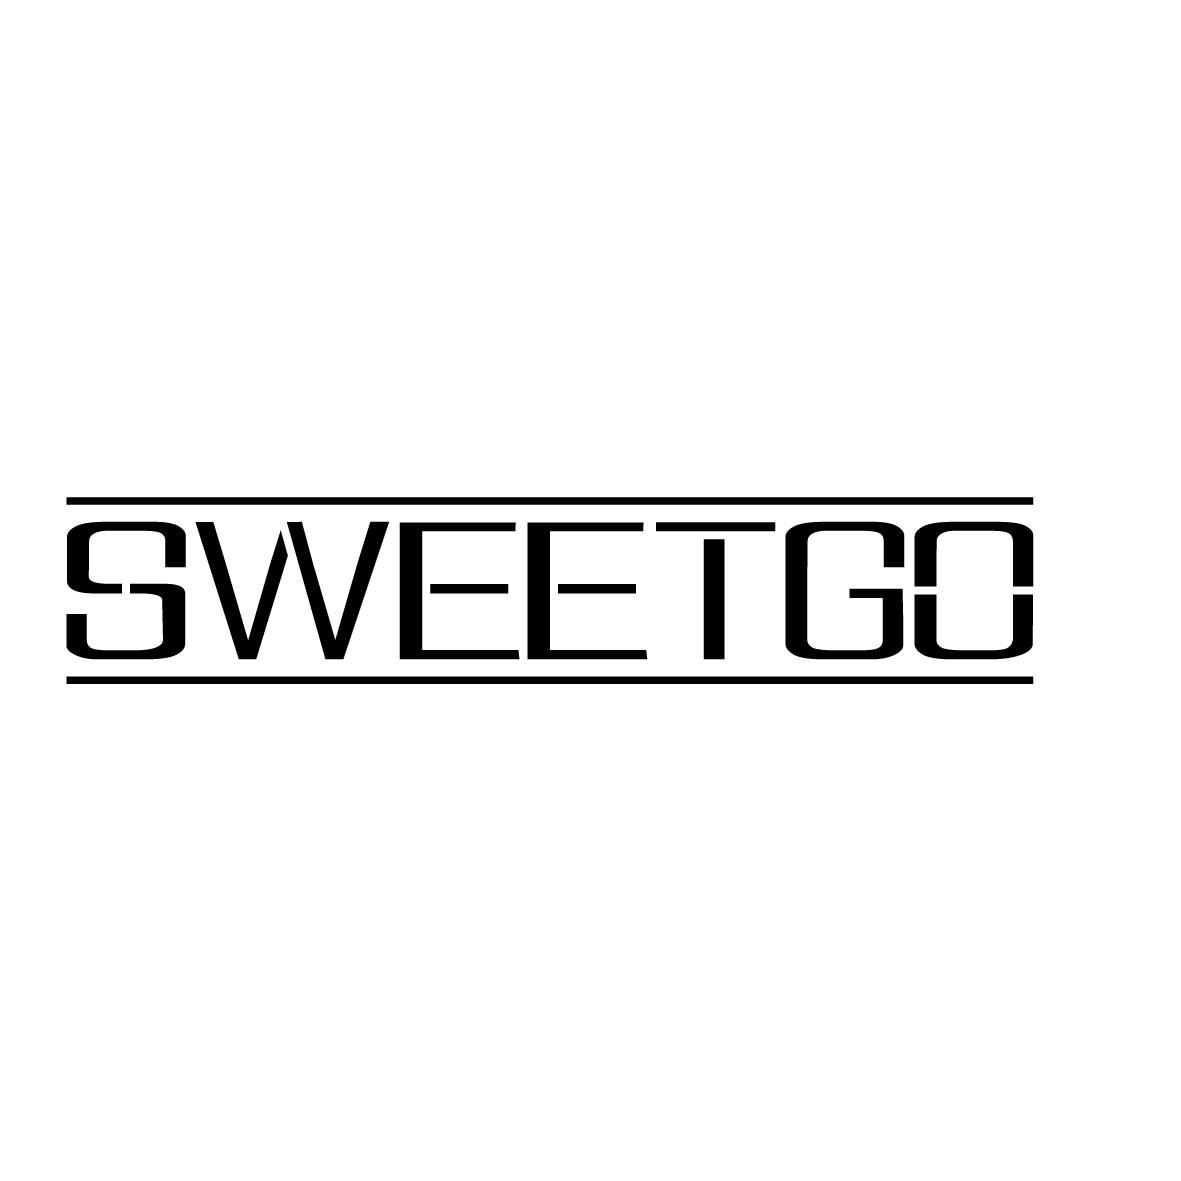 SWEETGO商标图片